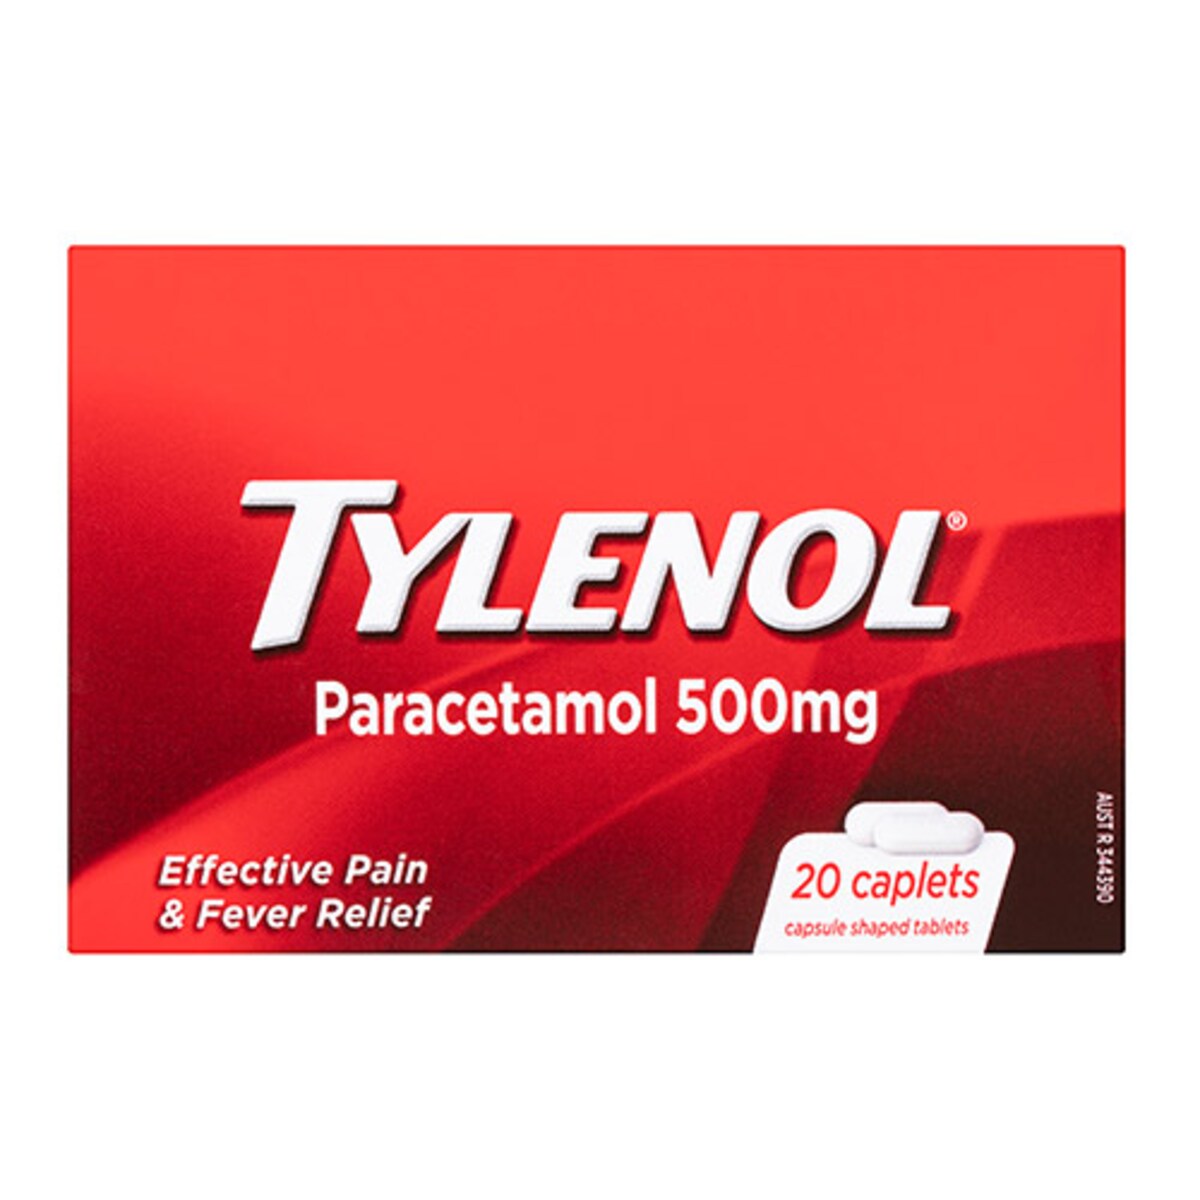 Tylenol Pain & Fever Relief 20 Caplets